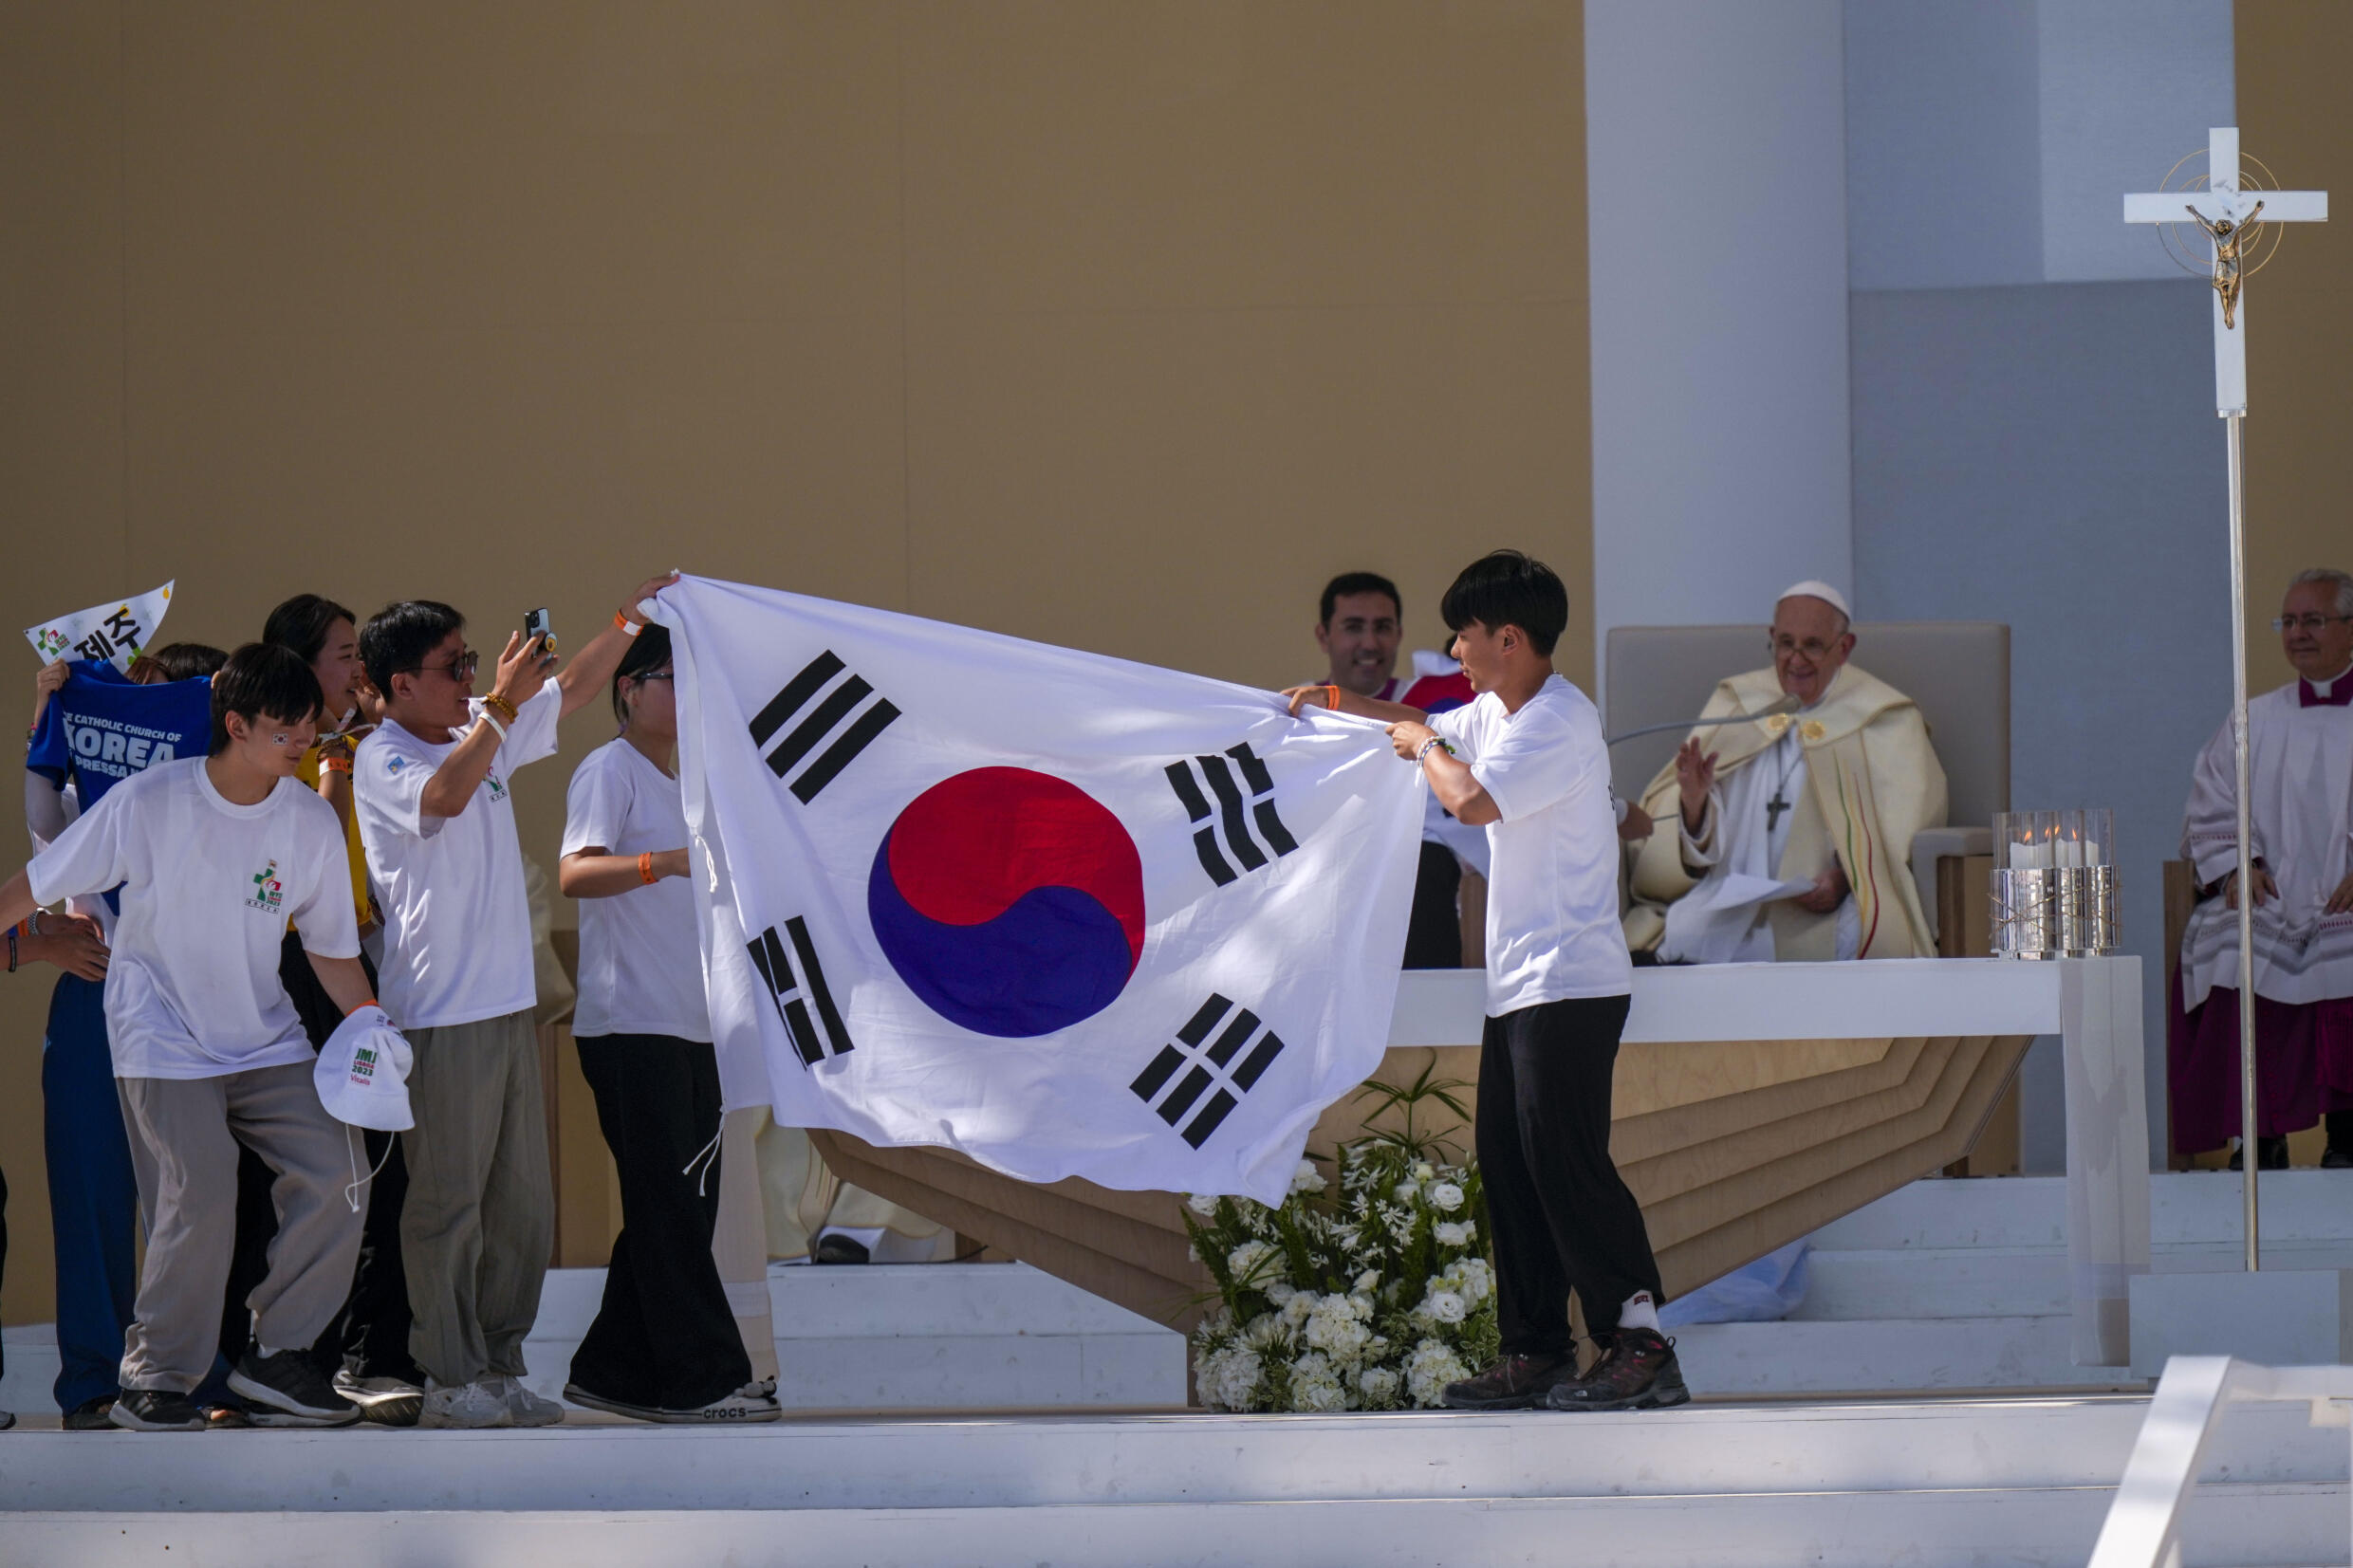 De jeunes pèlerins de Corée du Sud célèbrent avec leur drapeau national et le pape François après l'annonce de Séoul pour les JMJ 2027, ce dimanche 6 août 2023 près de Lisbonne.